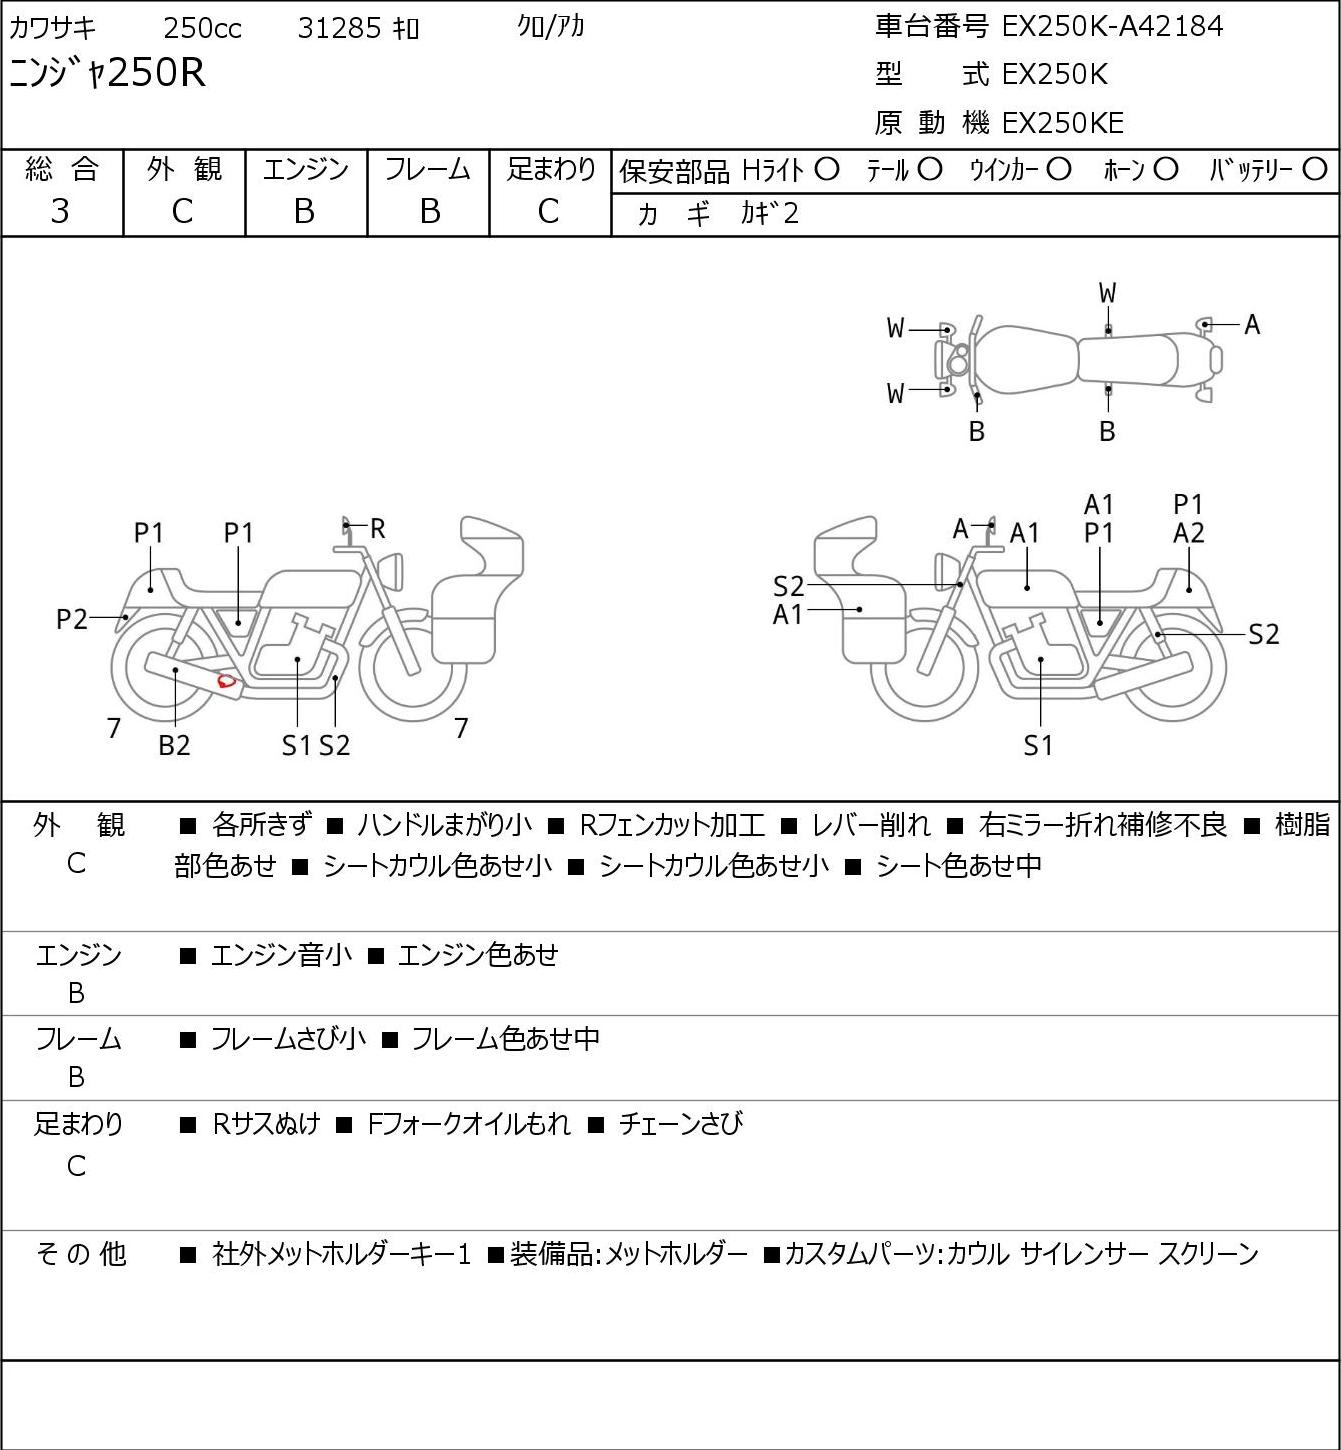 Kawasaki NINJA 250 R EX250K г. 31285